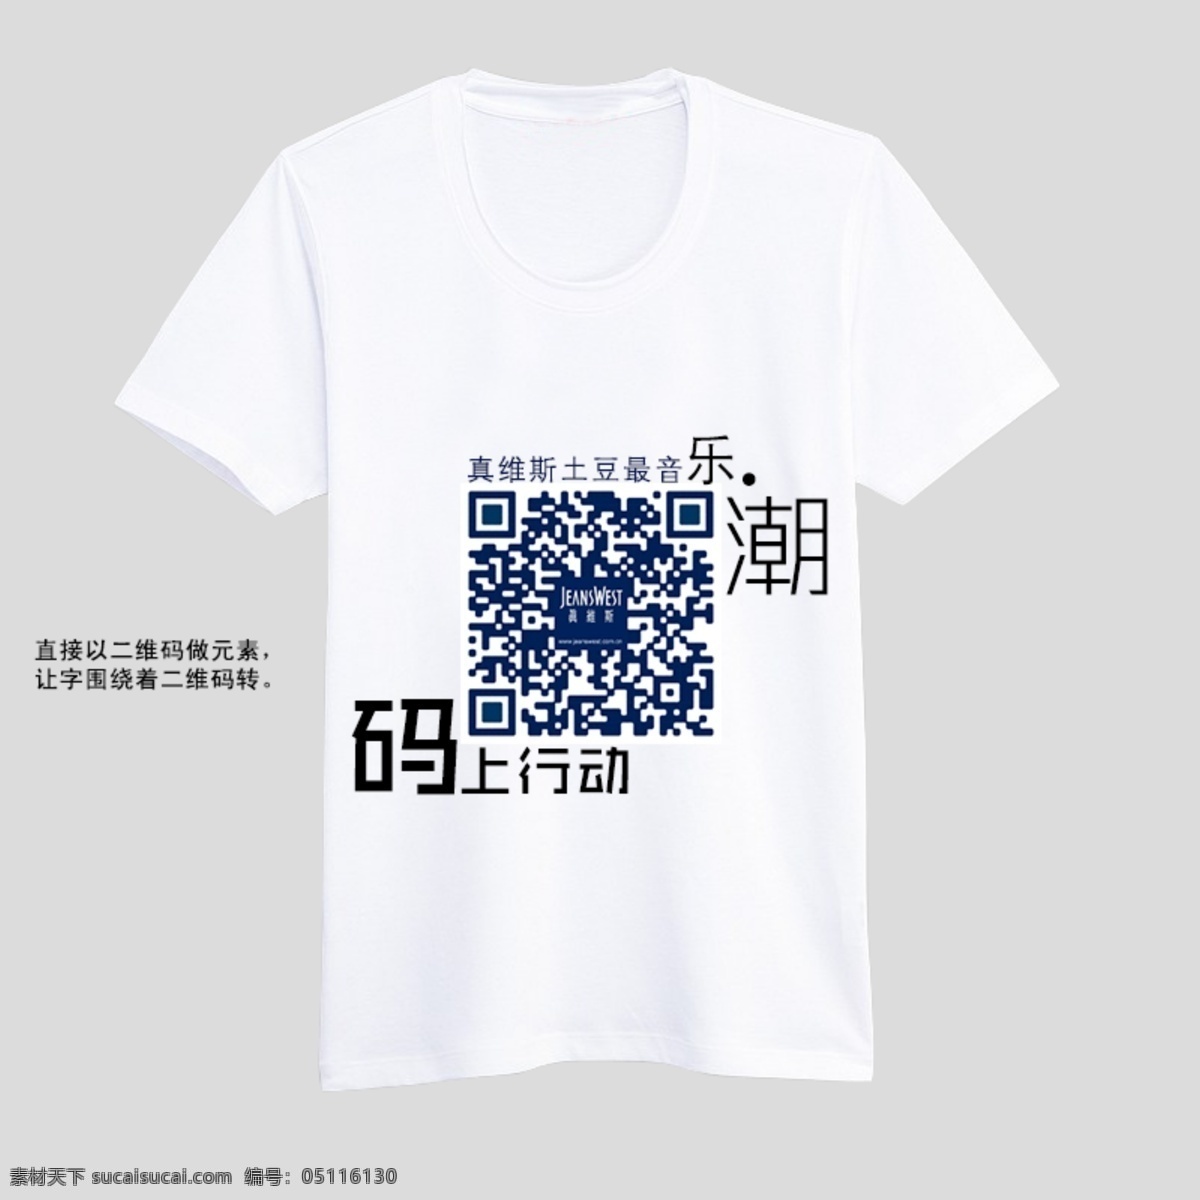 真维斯t恤 t恤 t恤模版 真维斯 logo 二维码 中文模板 网页模板 源文件